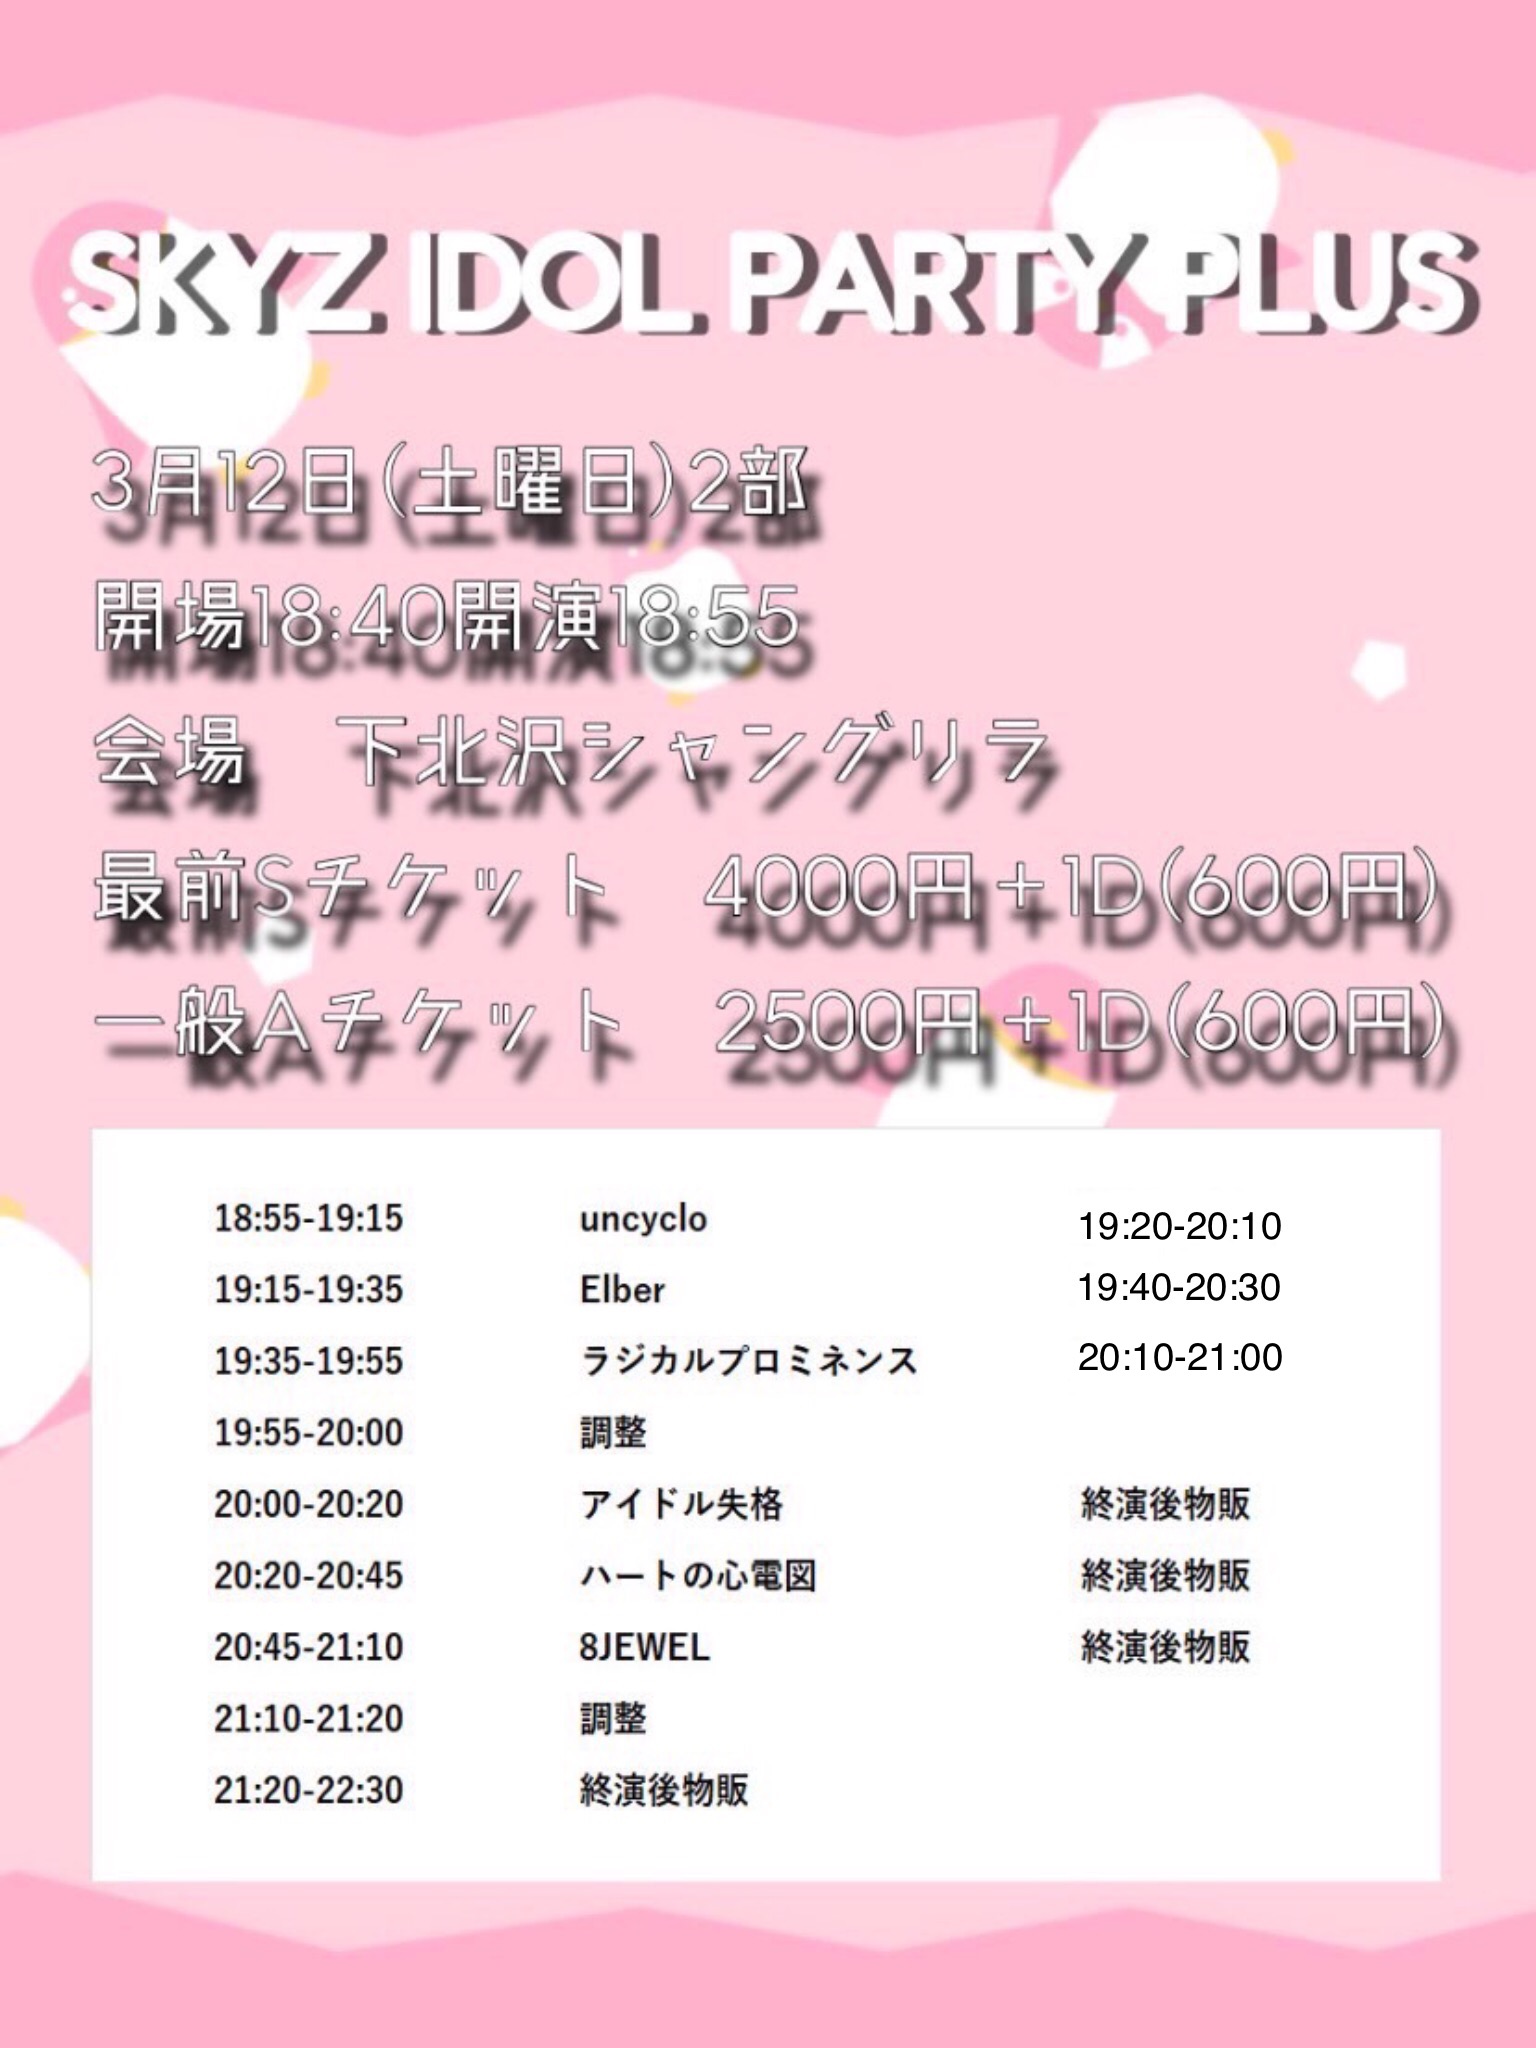 『SKYZ IDOL PARTY PLUS』2部